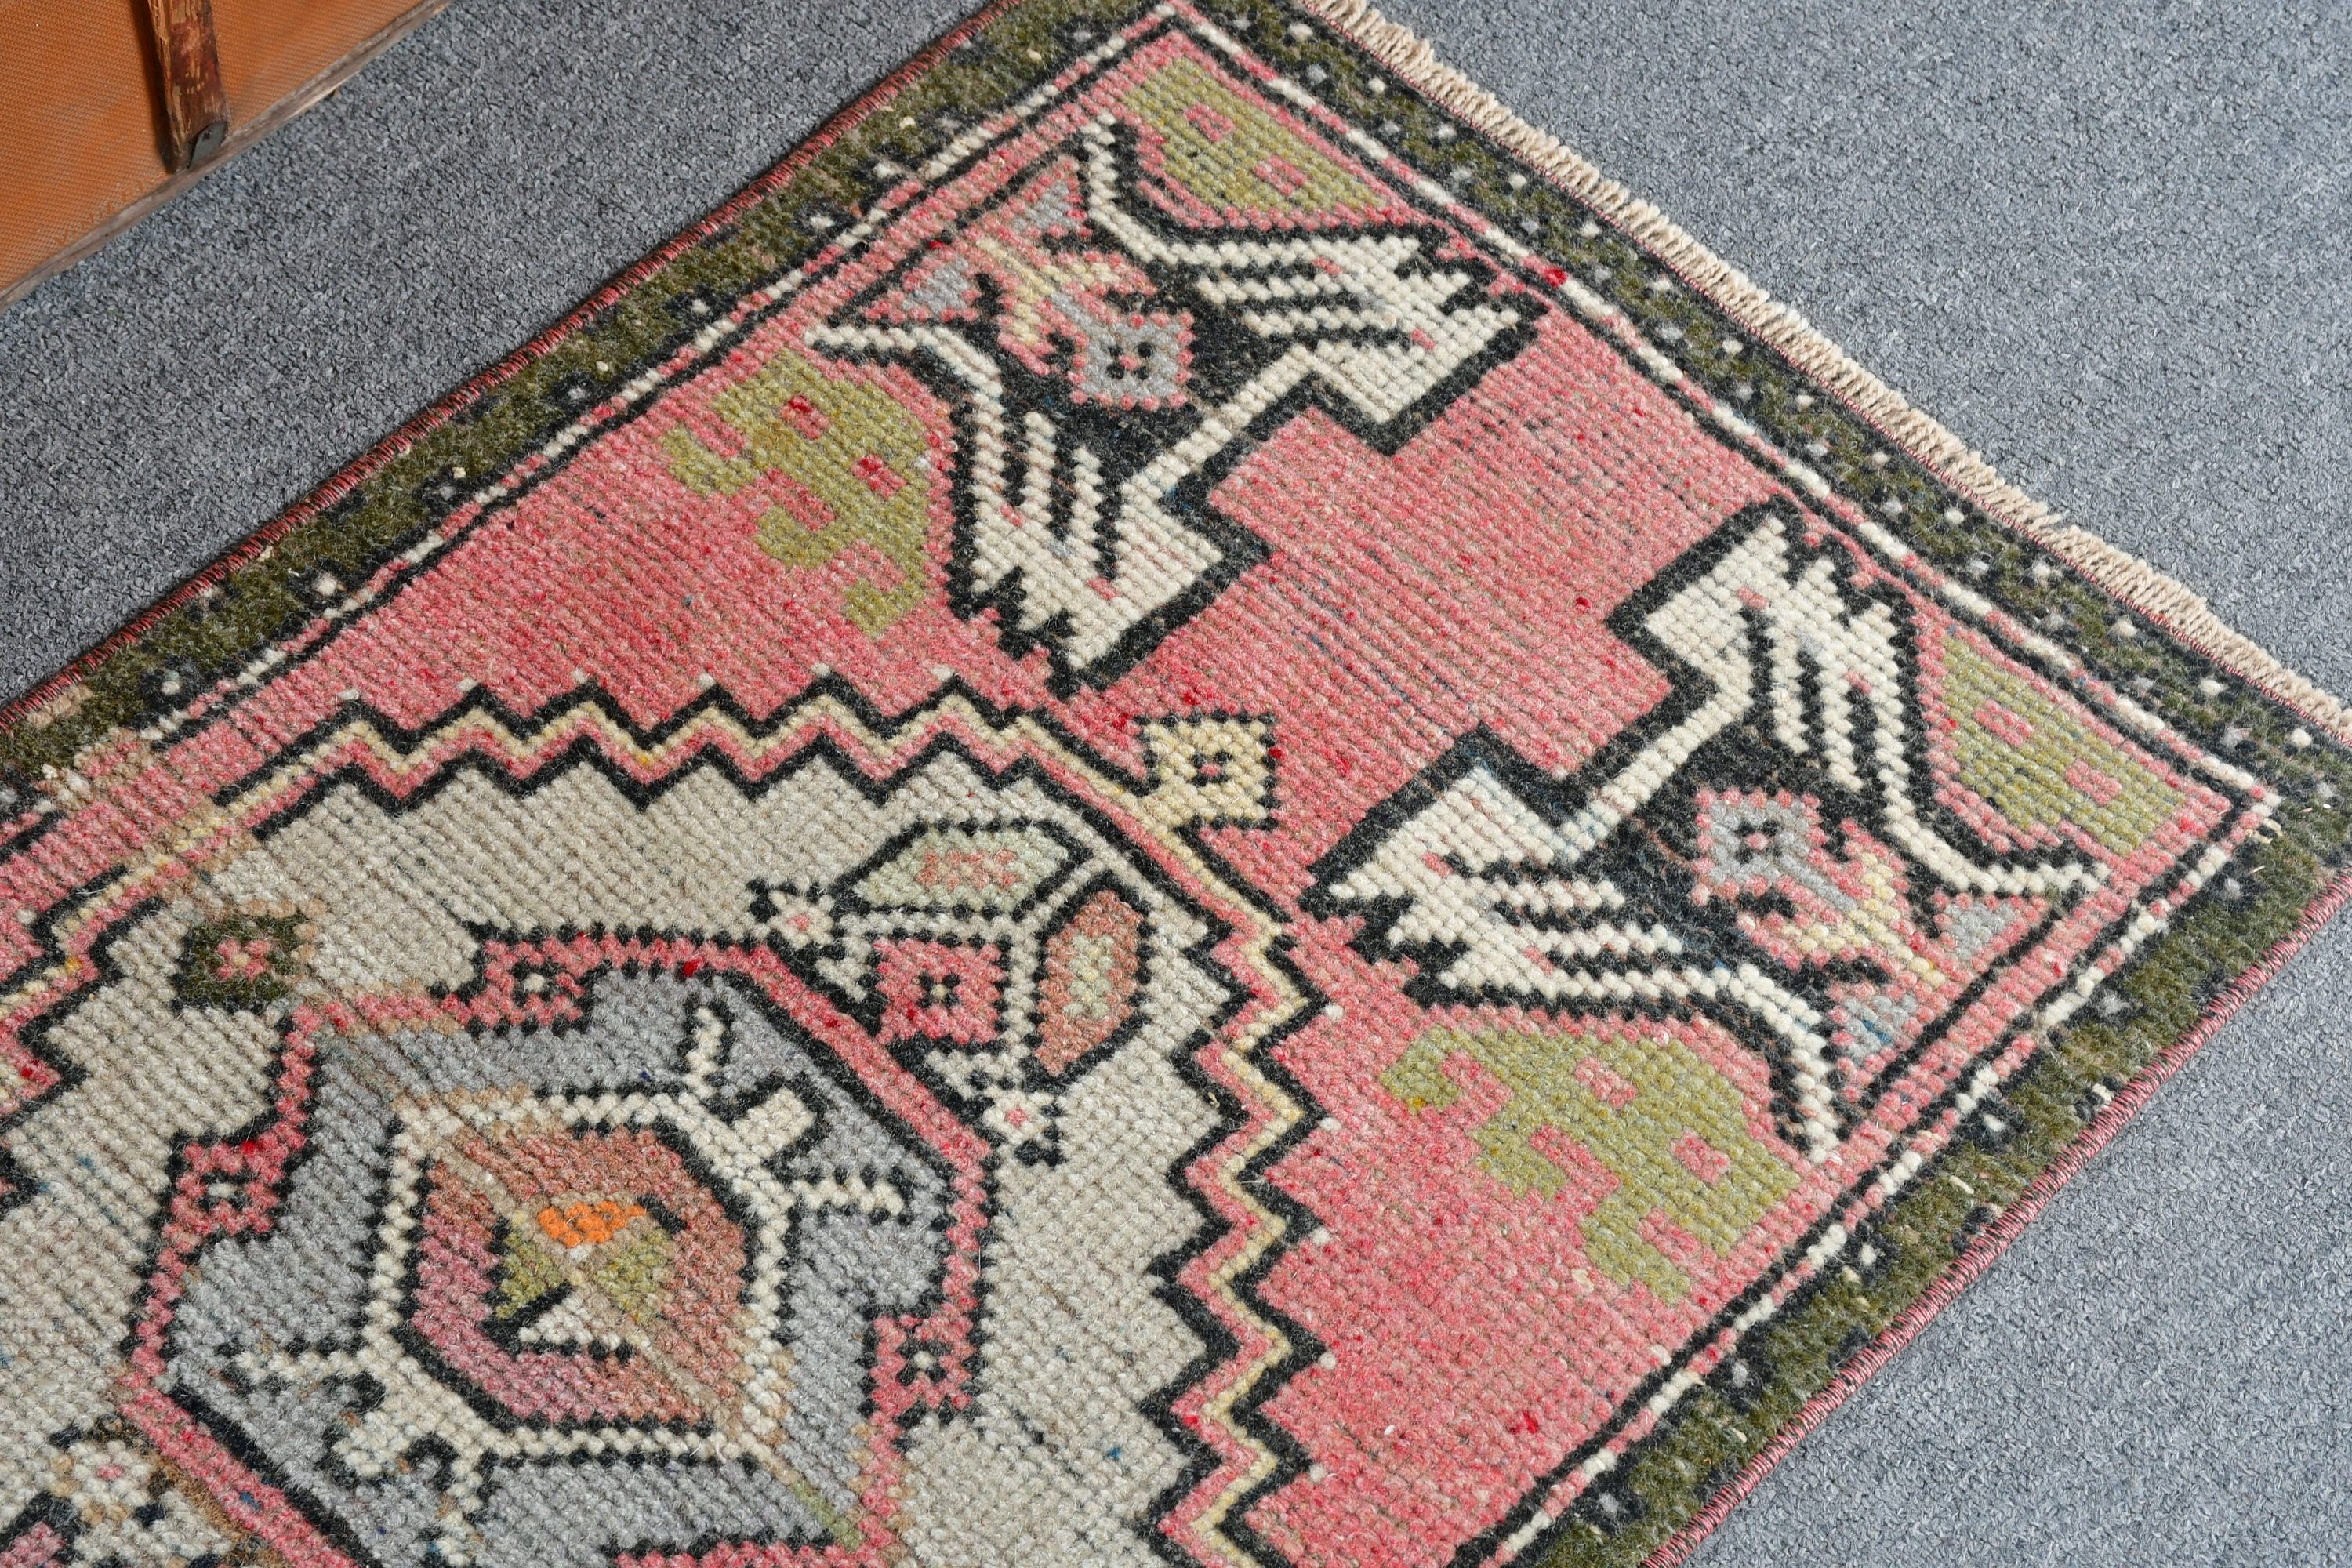 Art Rugs, Pink Anatolian Rug, Home Decor Rugs, Wall Hanging Rug, Nursery Rug, 1.6x2.9 ft Small Rug, Oushak Rug, Vintage Rug, Turkish Rug